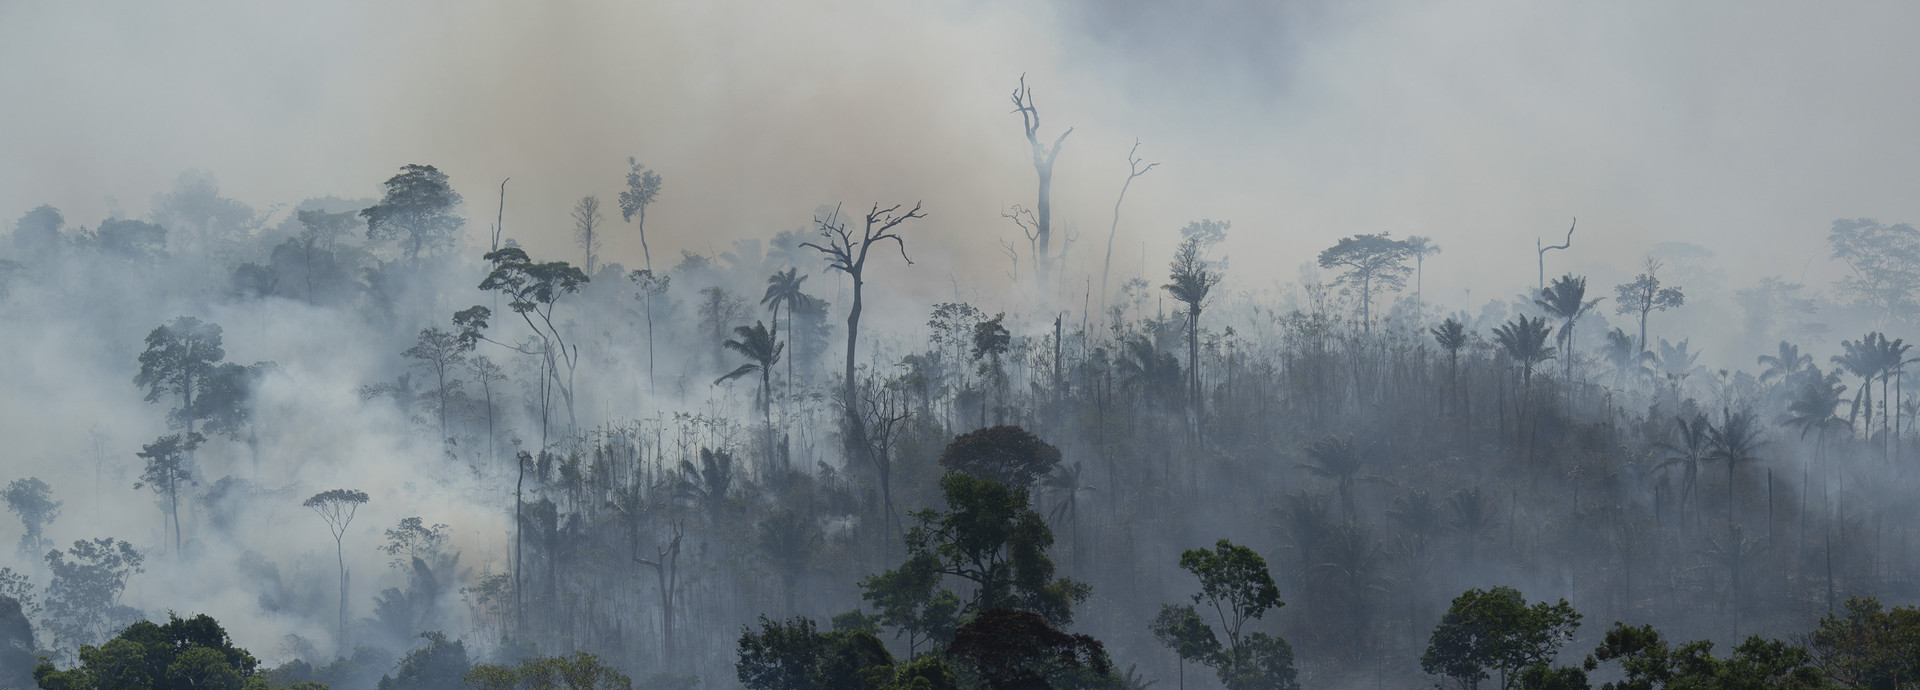 אש ביער האמזונס במחוז אלטמירה בברזיל